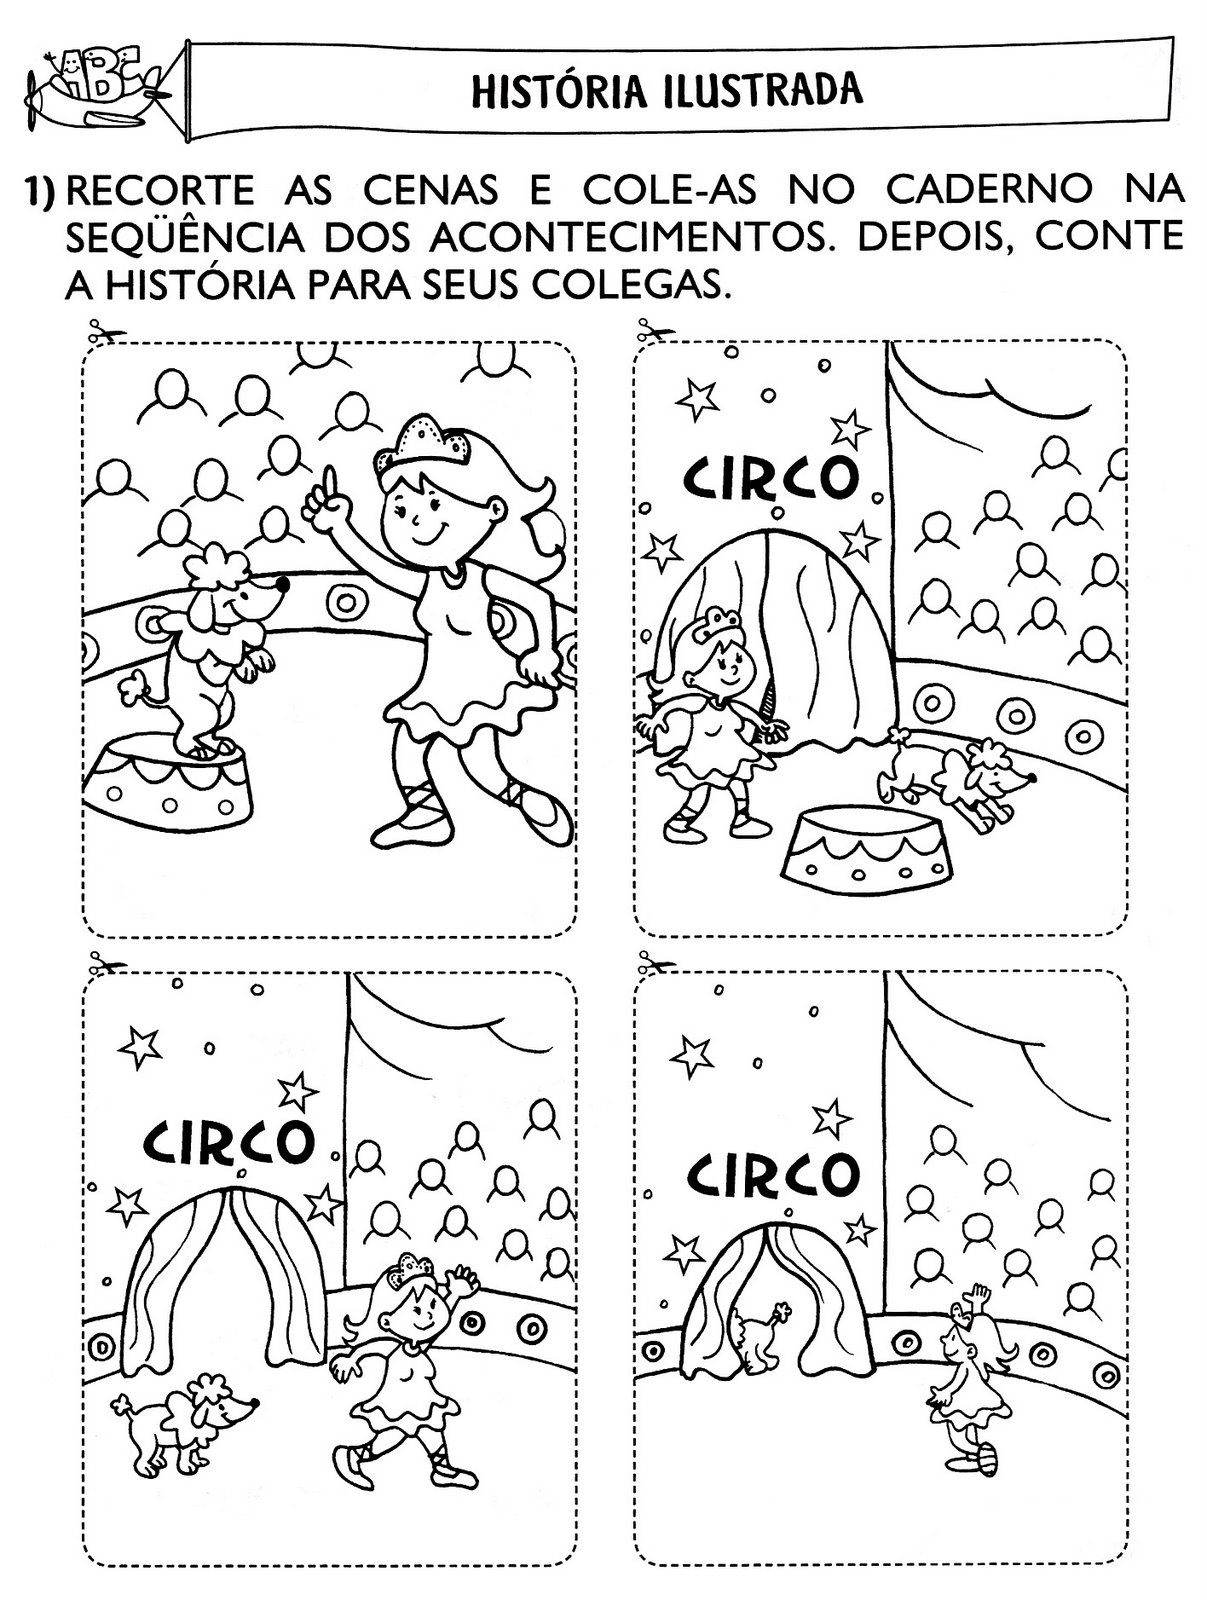 www.ensinar-aprender.blogspot.comhistória ilustrada - organizando cenas- o Circo